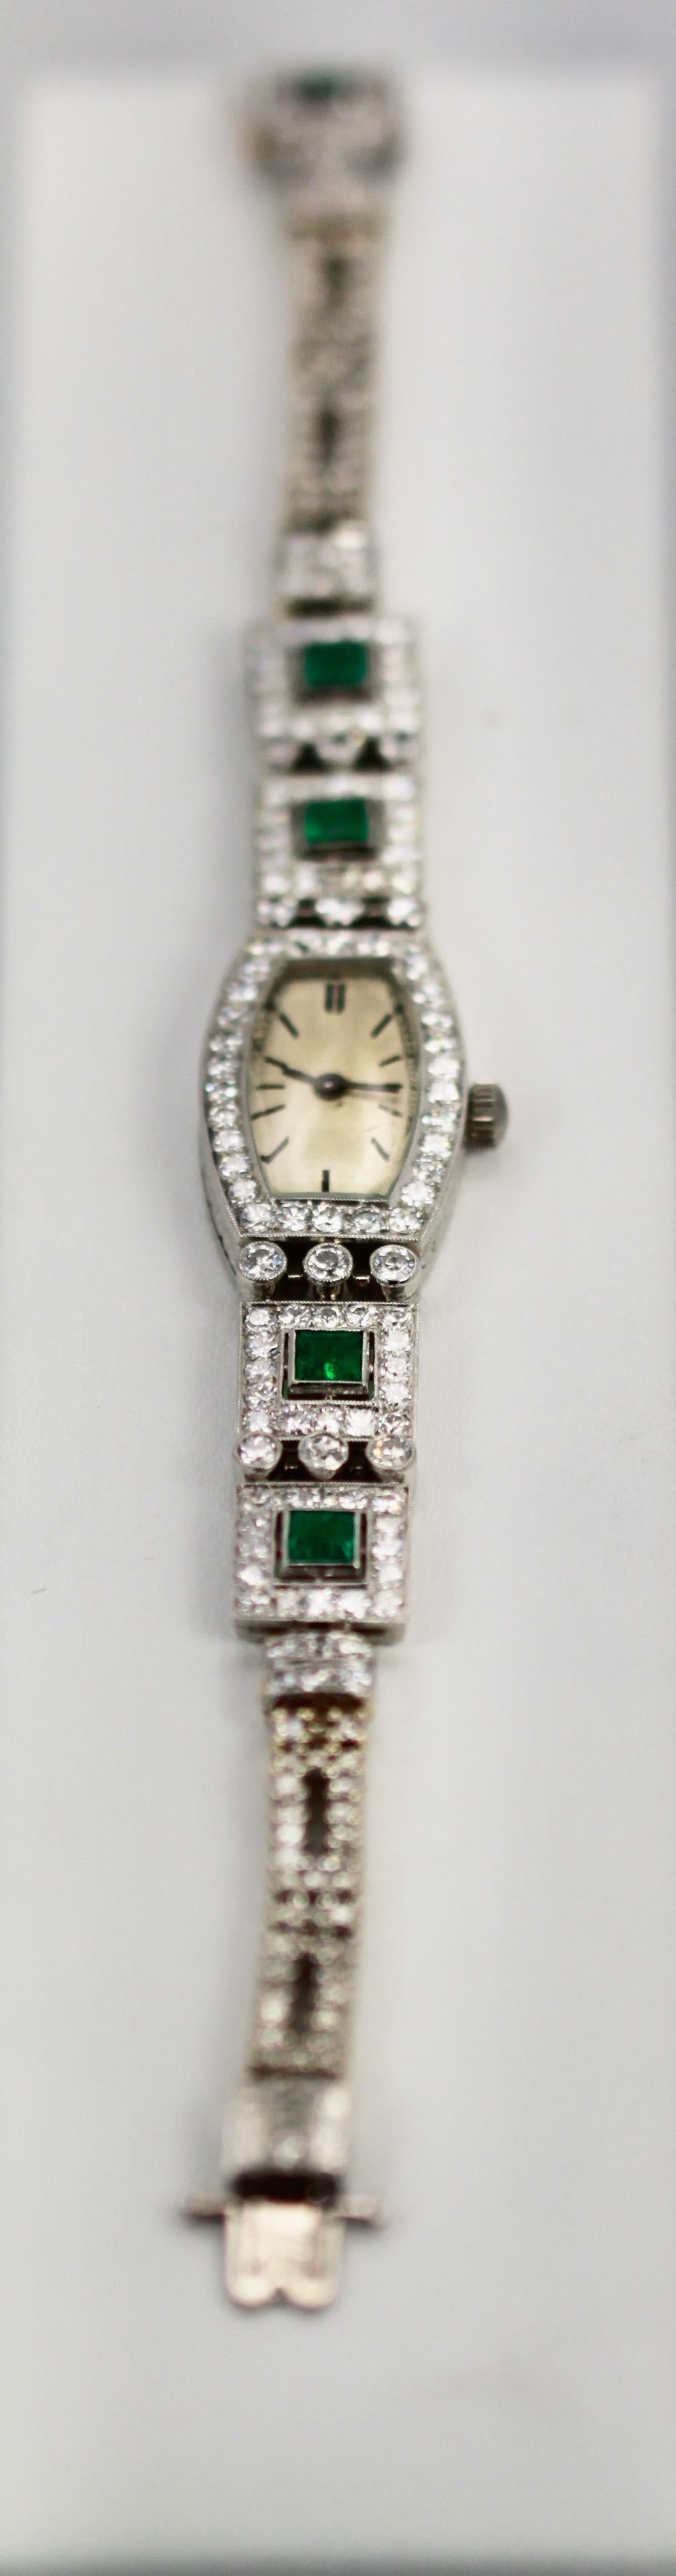 Diese wunderschöne Deco Emerald Platinum Damenarmbanduhr ist aus den 1920er bis 1930er Jahren und hat österreichische Punzen.  Ich mochte die Deco- und Retro-Epoche, weil die Damenuhren alle mit Edelsteinen besetzt waren und wie Armbänder aussahen.